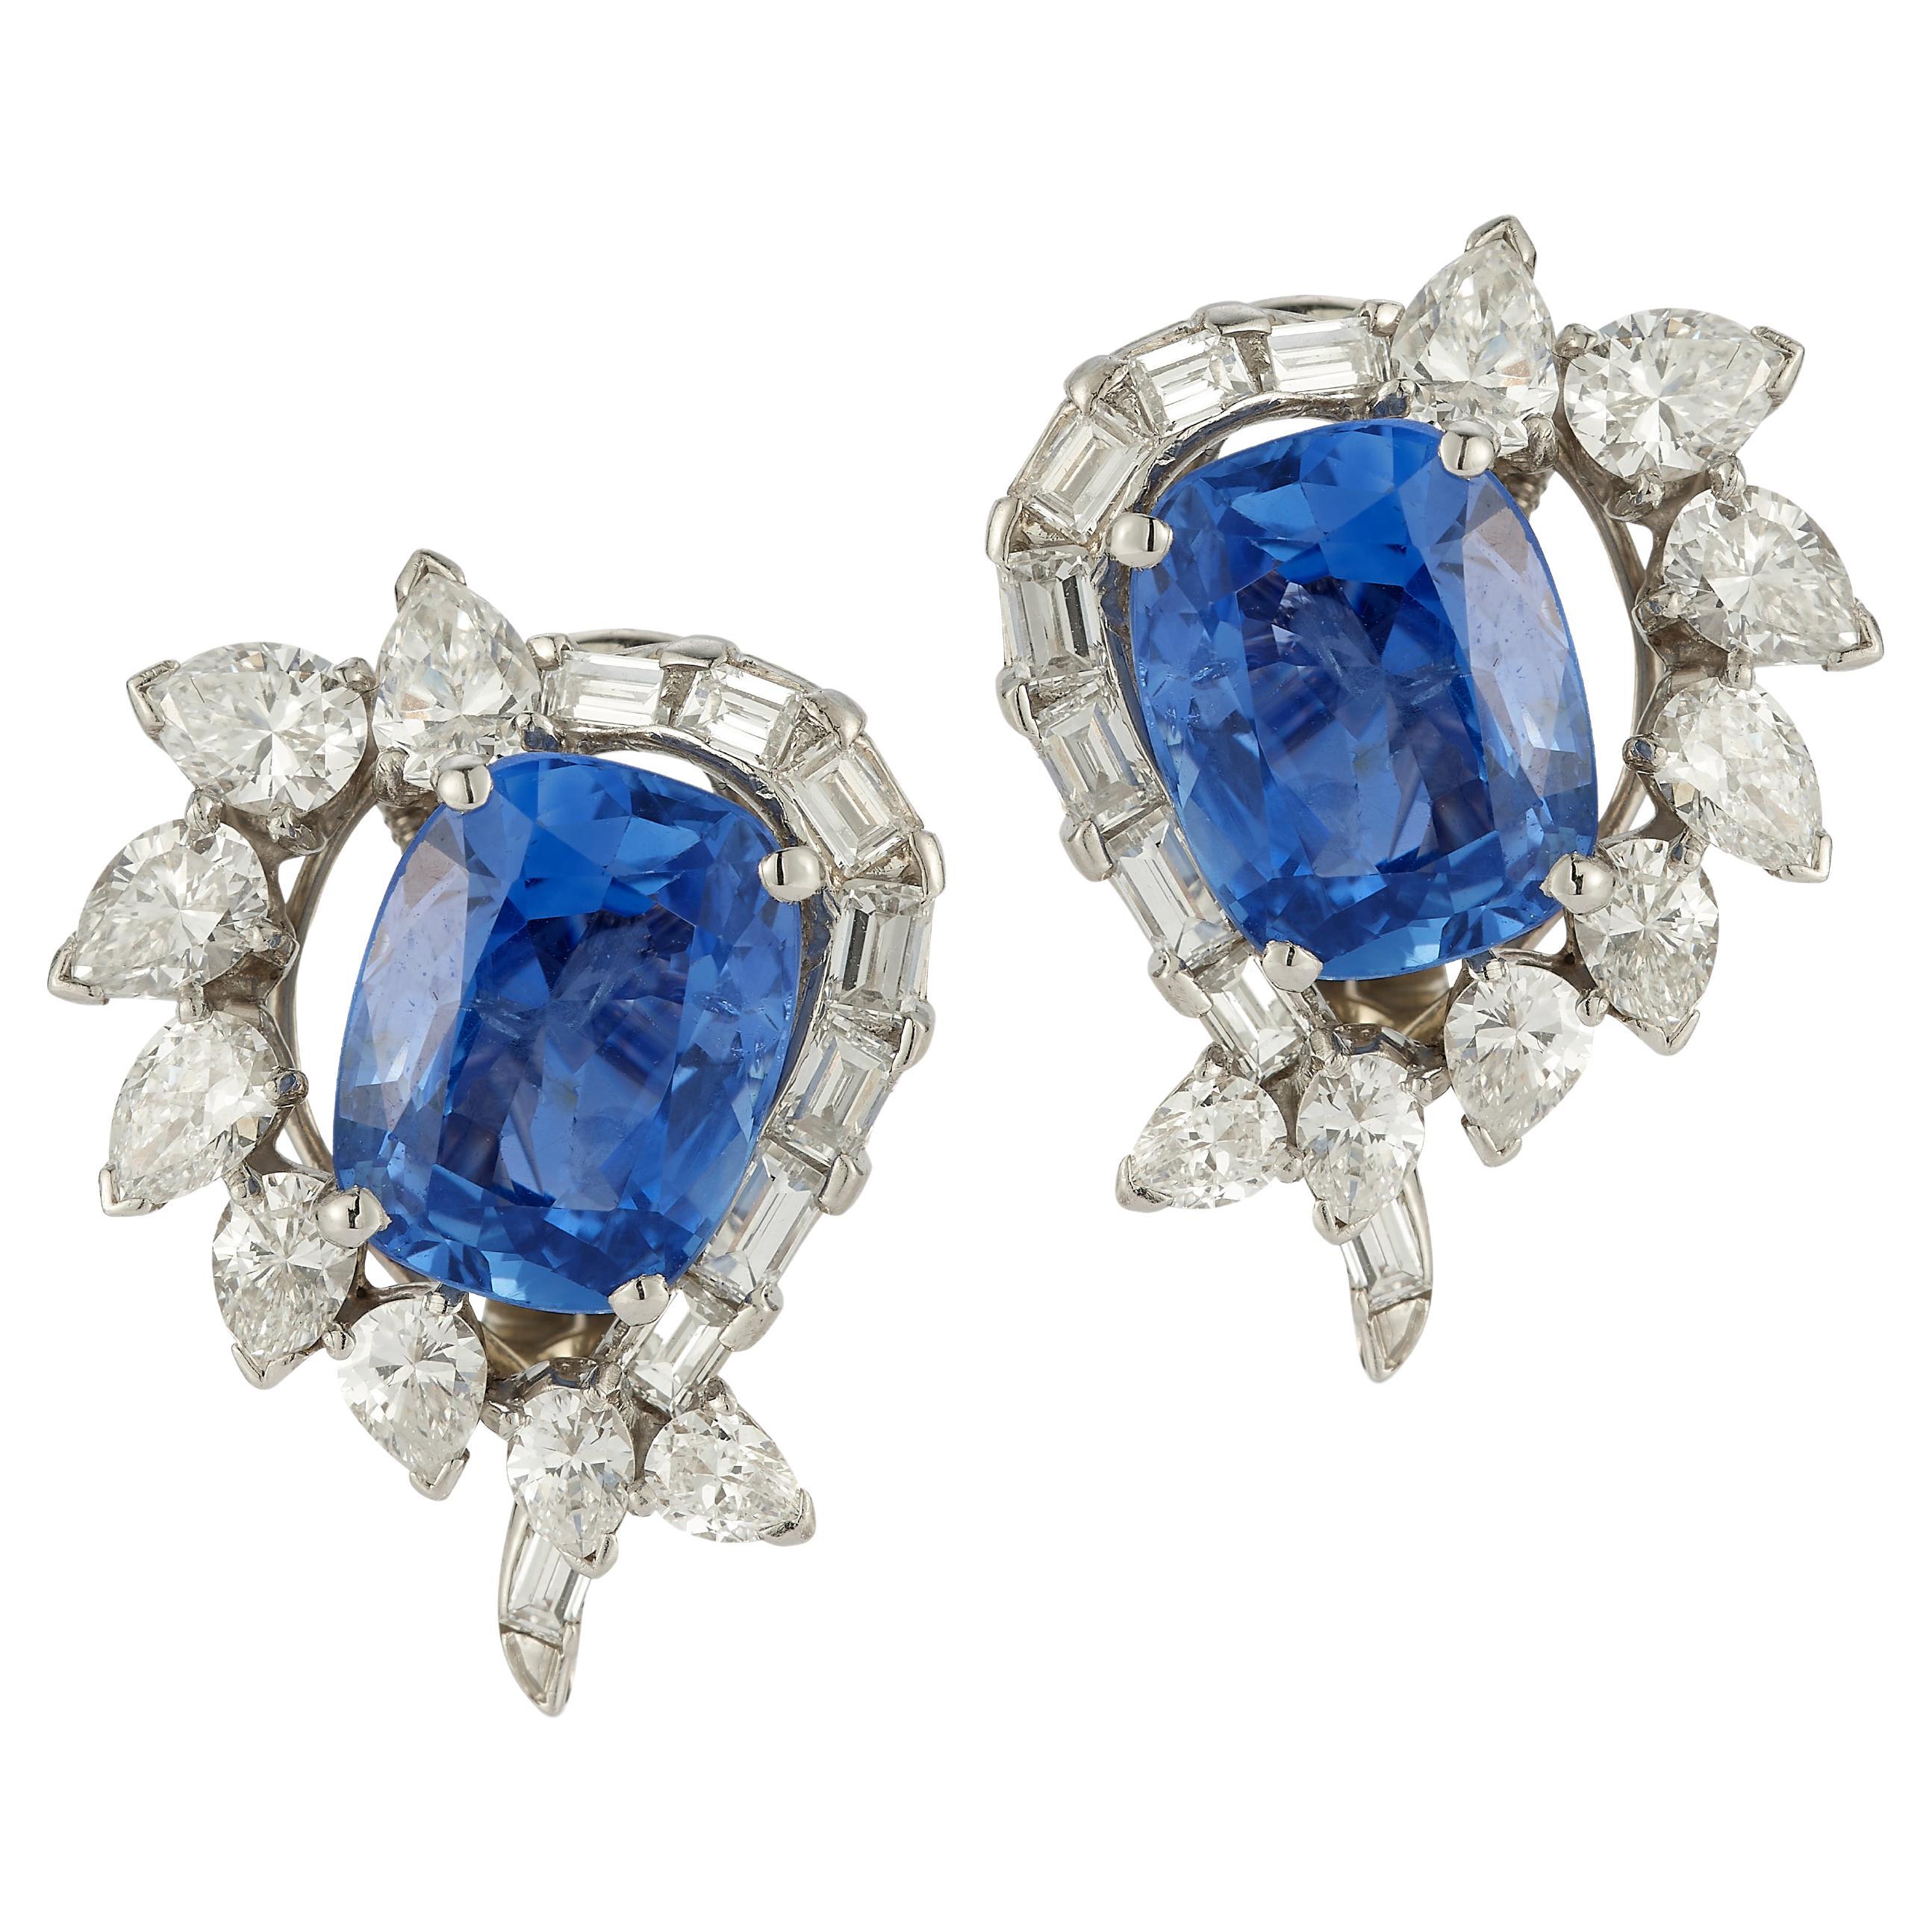 Oscar Heyman Brothers Ohrringe mit zertifizierten natürlichen Saphiren und Diamanten 